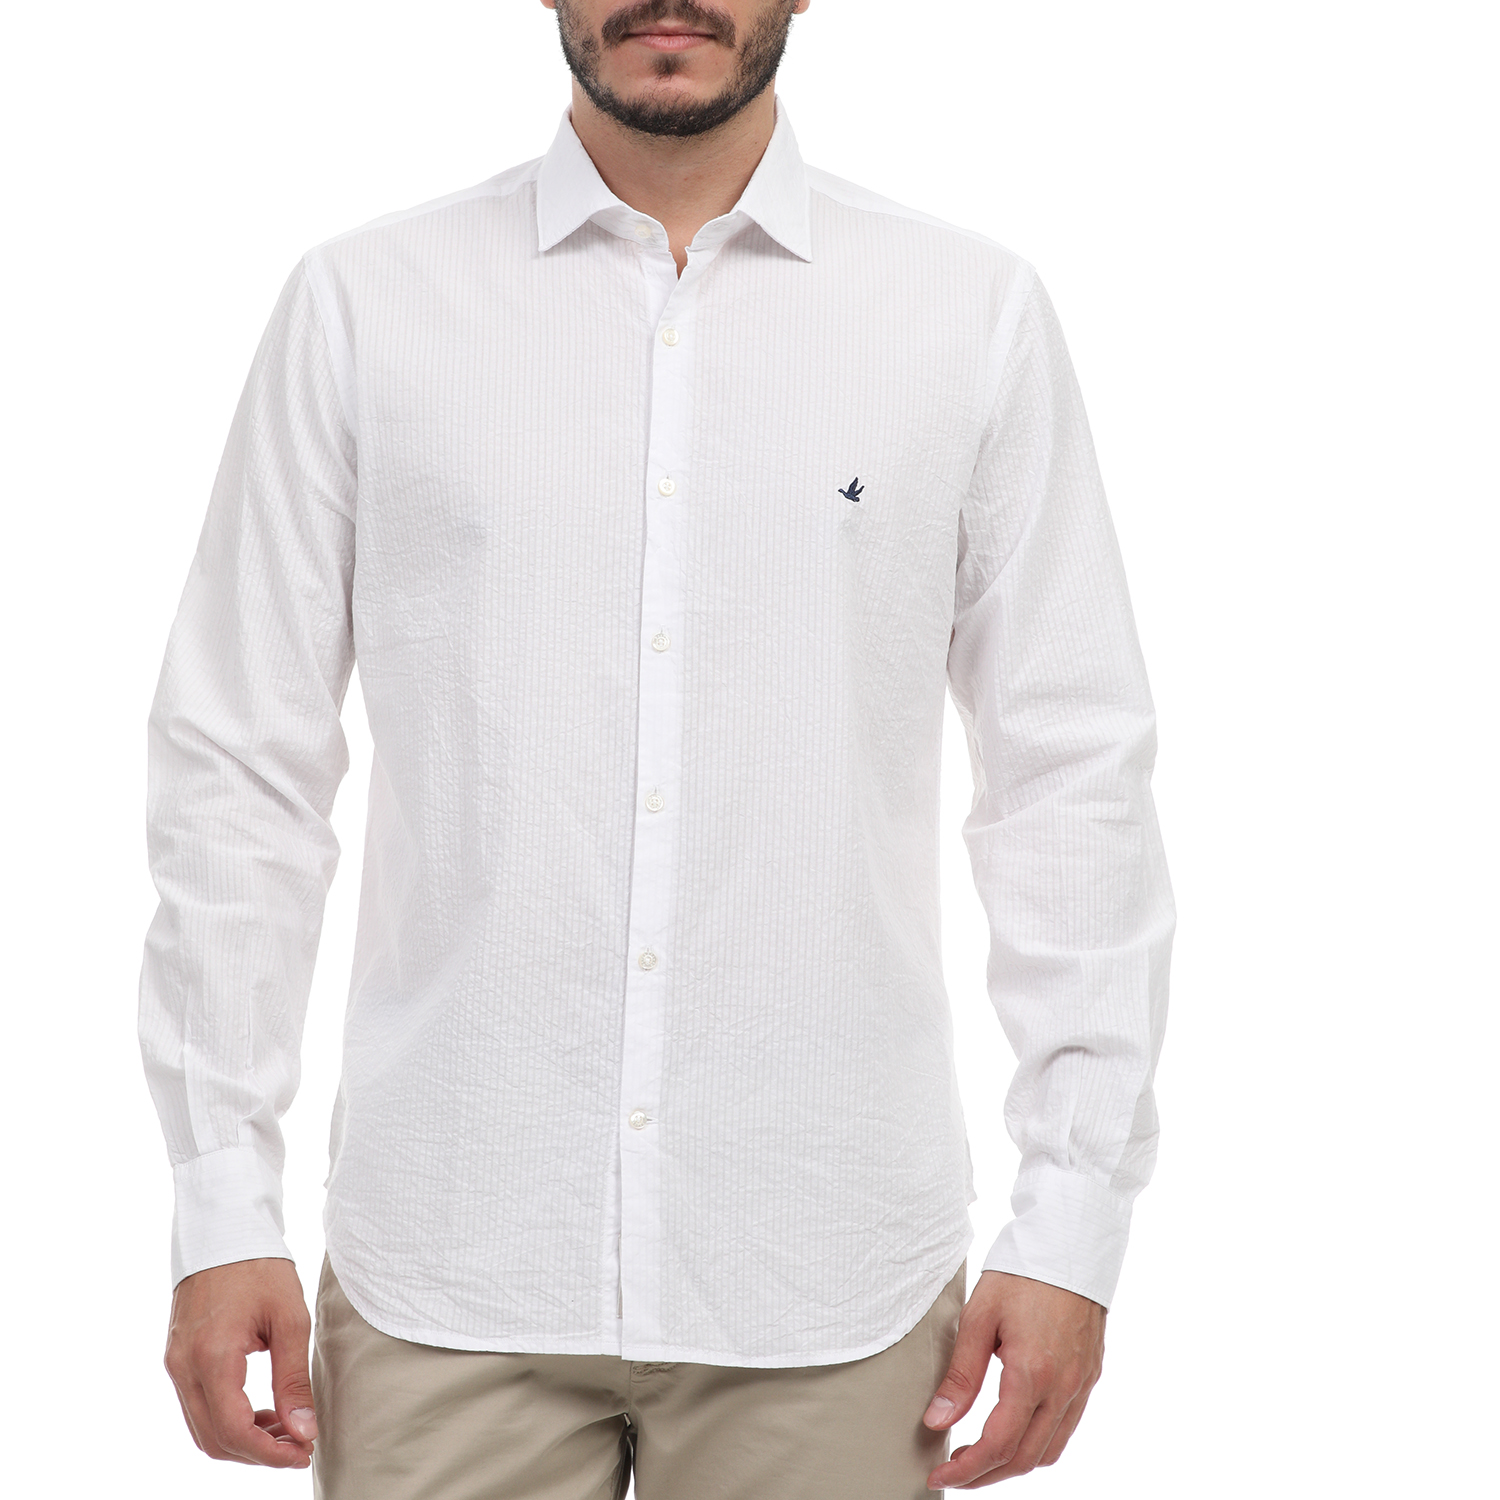 Ανδρικά/Ρούχα/Πουκάμισα/Μακρυμάνικα BROOKSFIELD - Ανδρικό πουκάμισο BROOKSFIELD λευκό